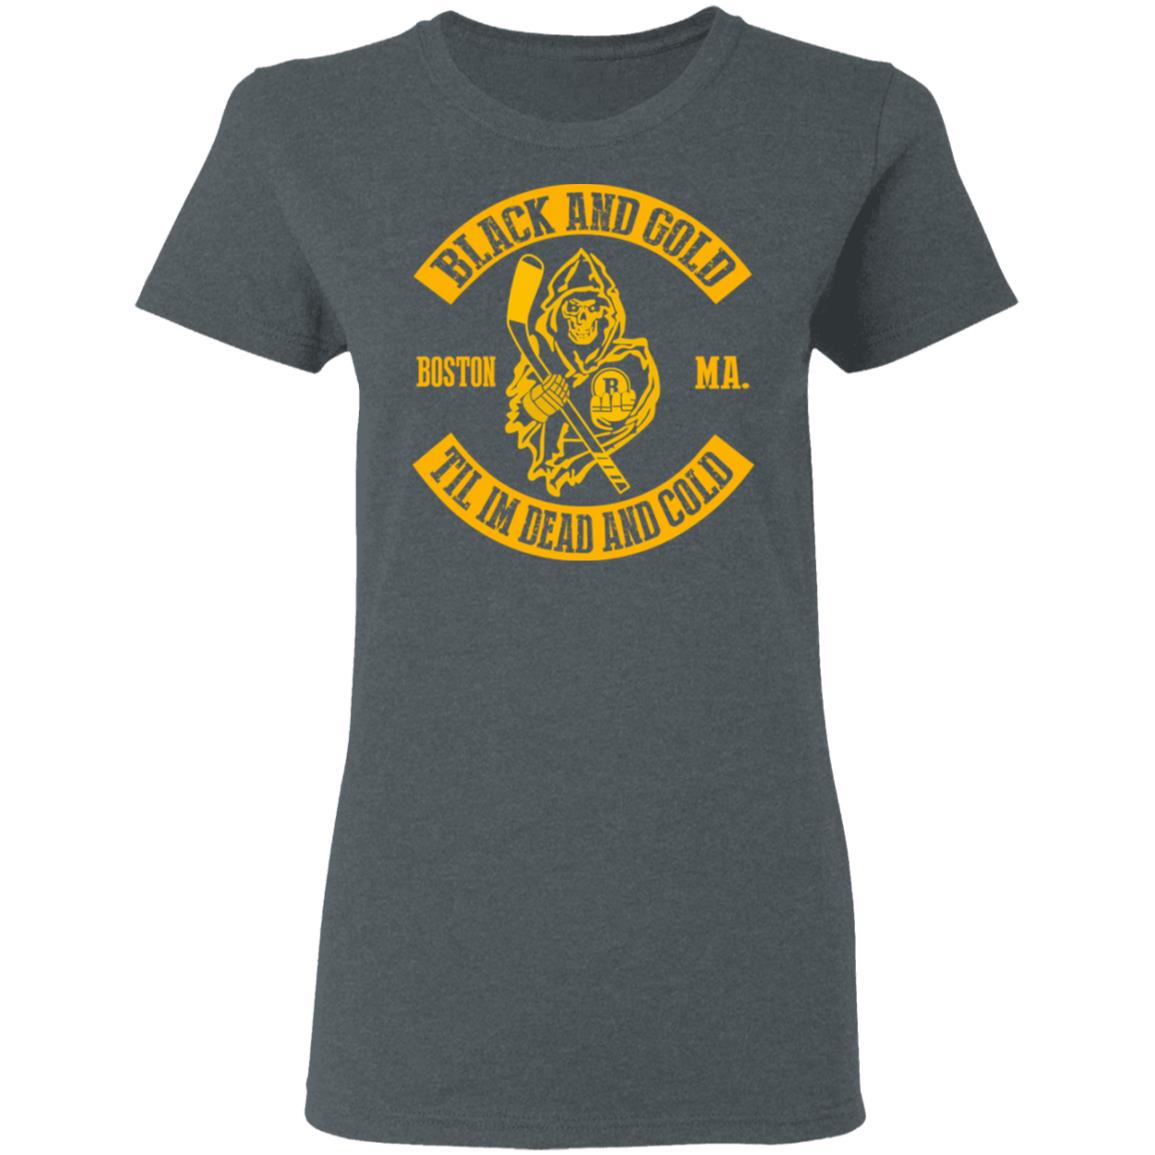 Boston Bruins Black T-Shirt - Unisex - 100% Cotton - S, M, L, XL